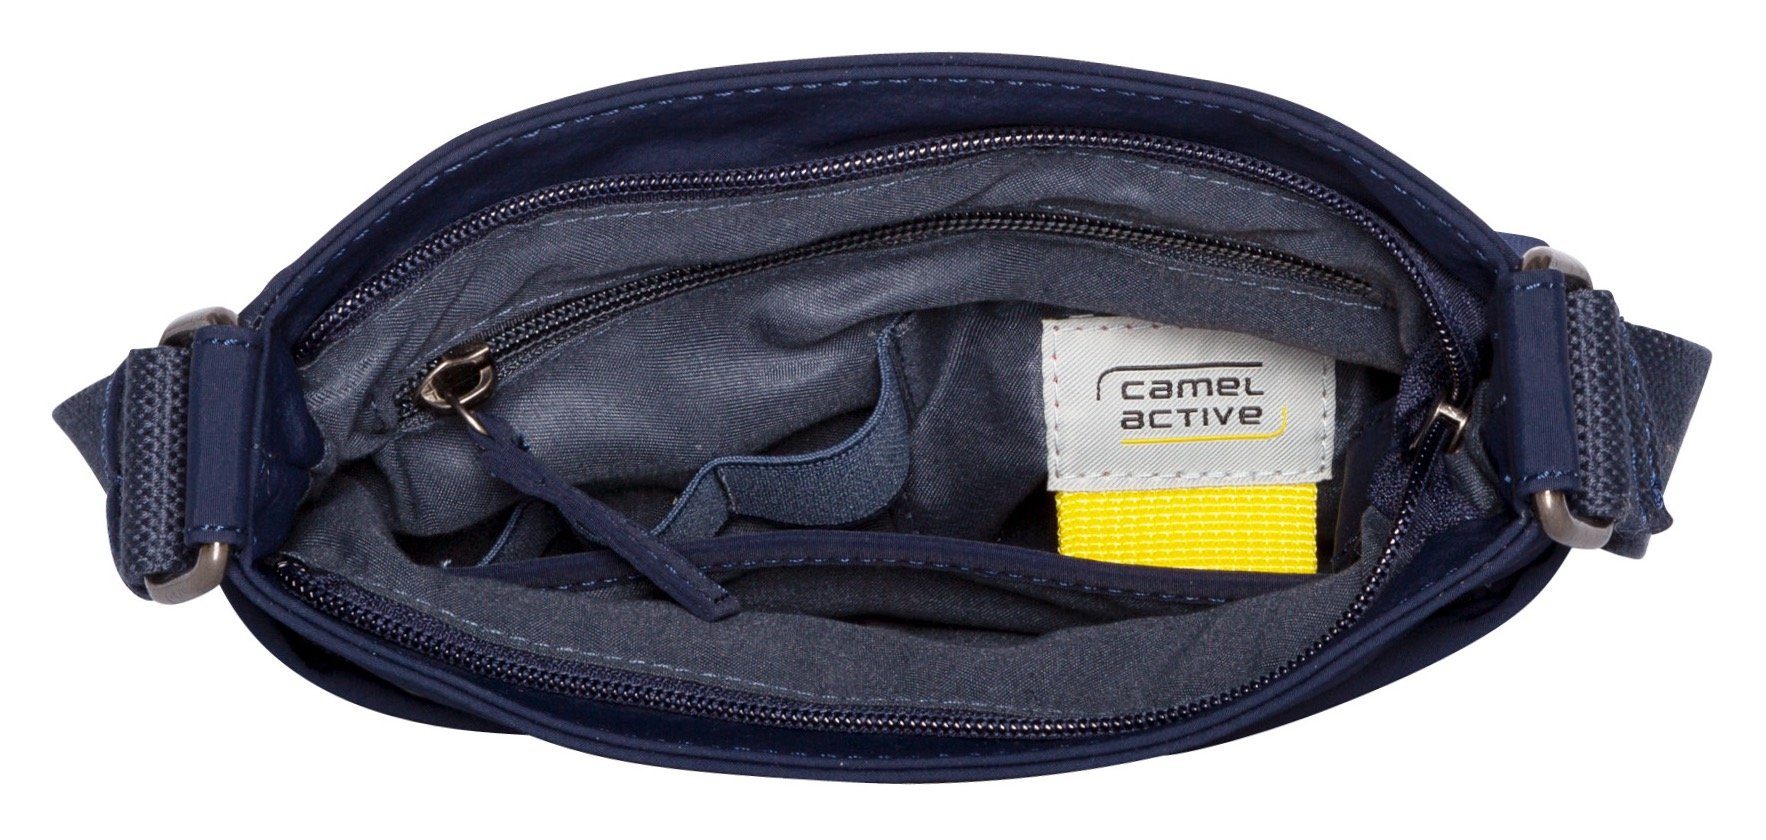 camel active bag Cross S, Design dunkelblau im praktischen City Umhängetasche